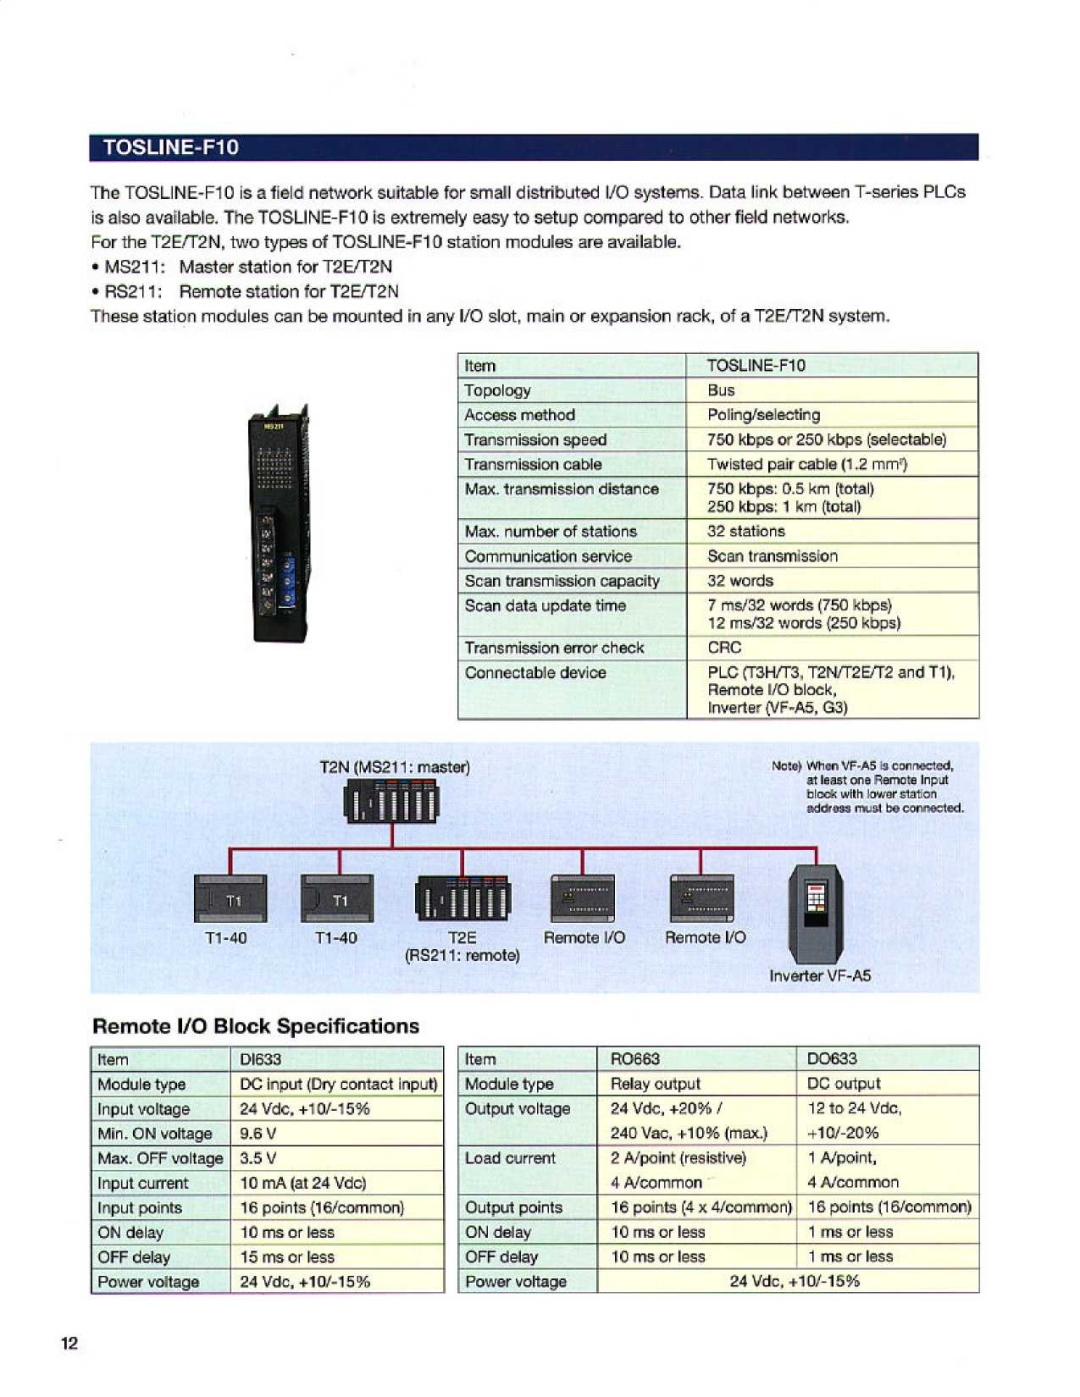 Toshiba manual Mast it statlort for T2ETT N 